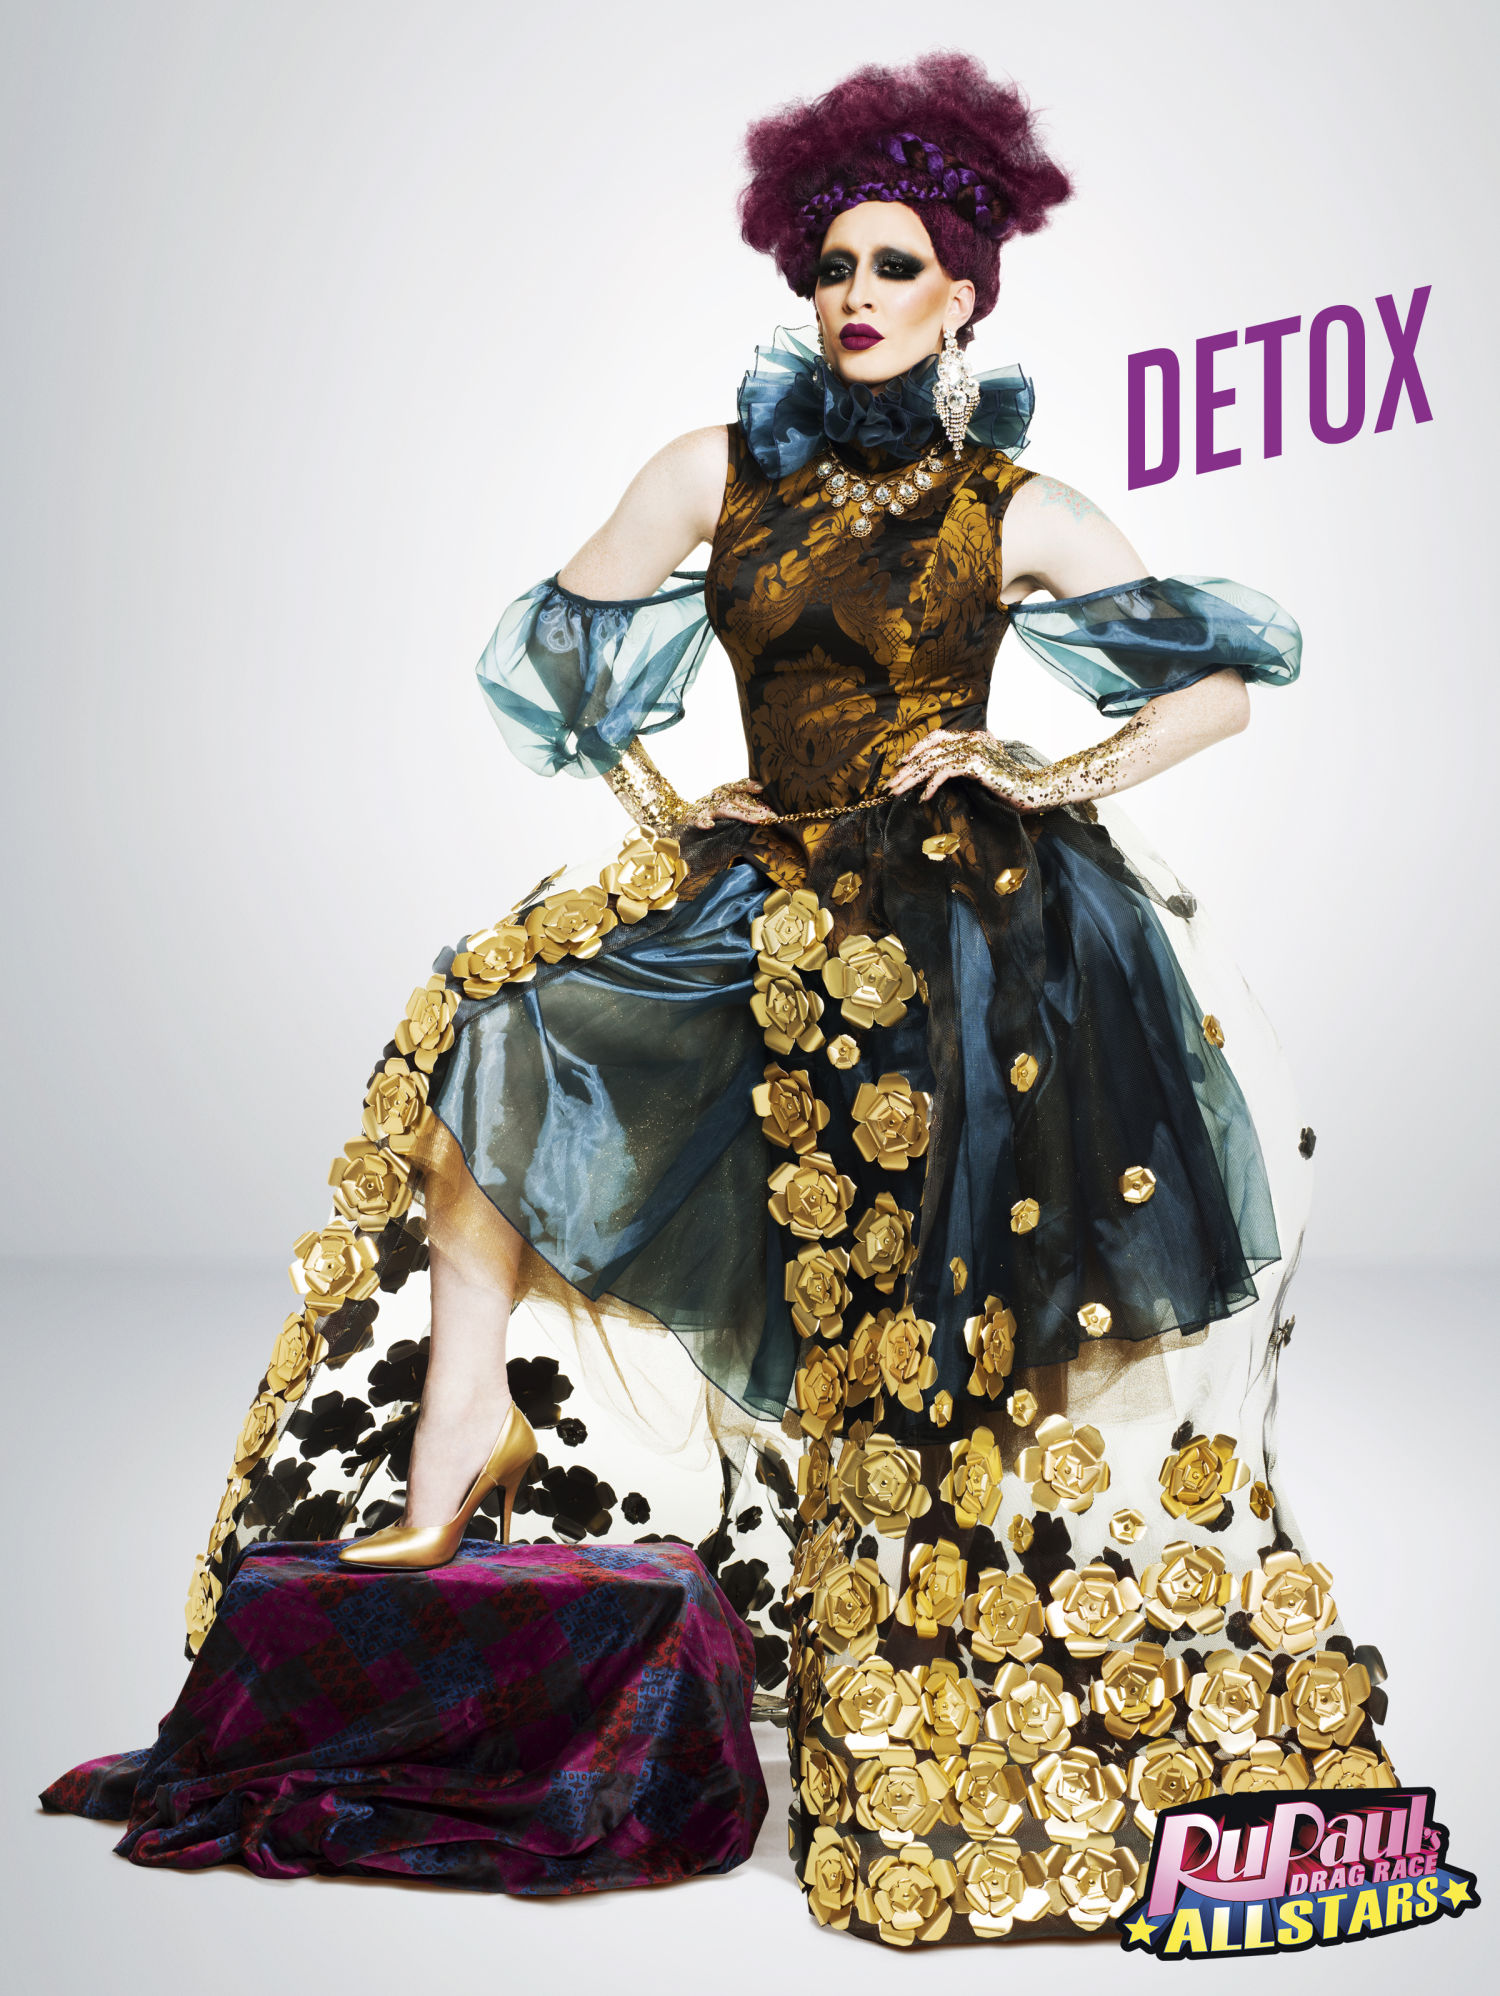 Detox is az 5. évadban lett ismert (eléggé jelentős az 5. évados túlsúly) vagány perszónájával.